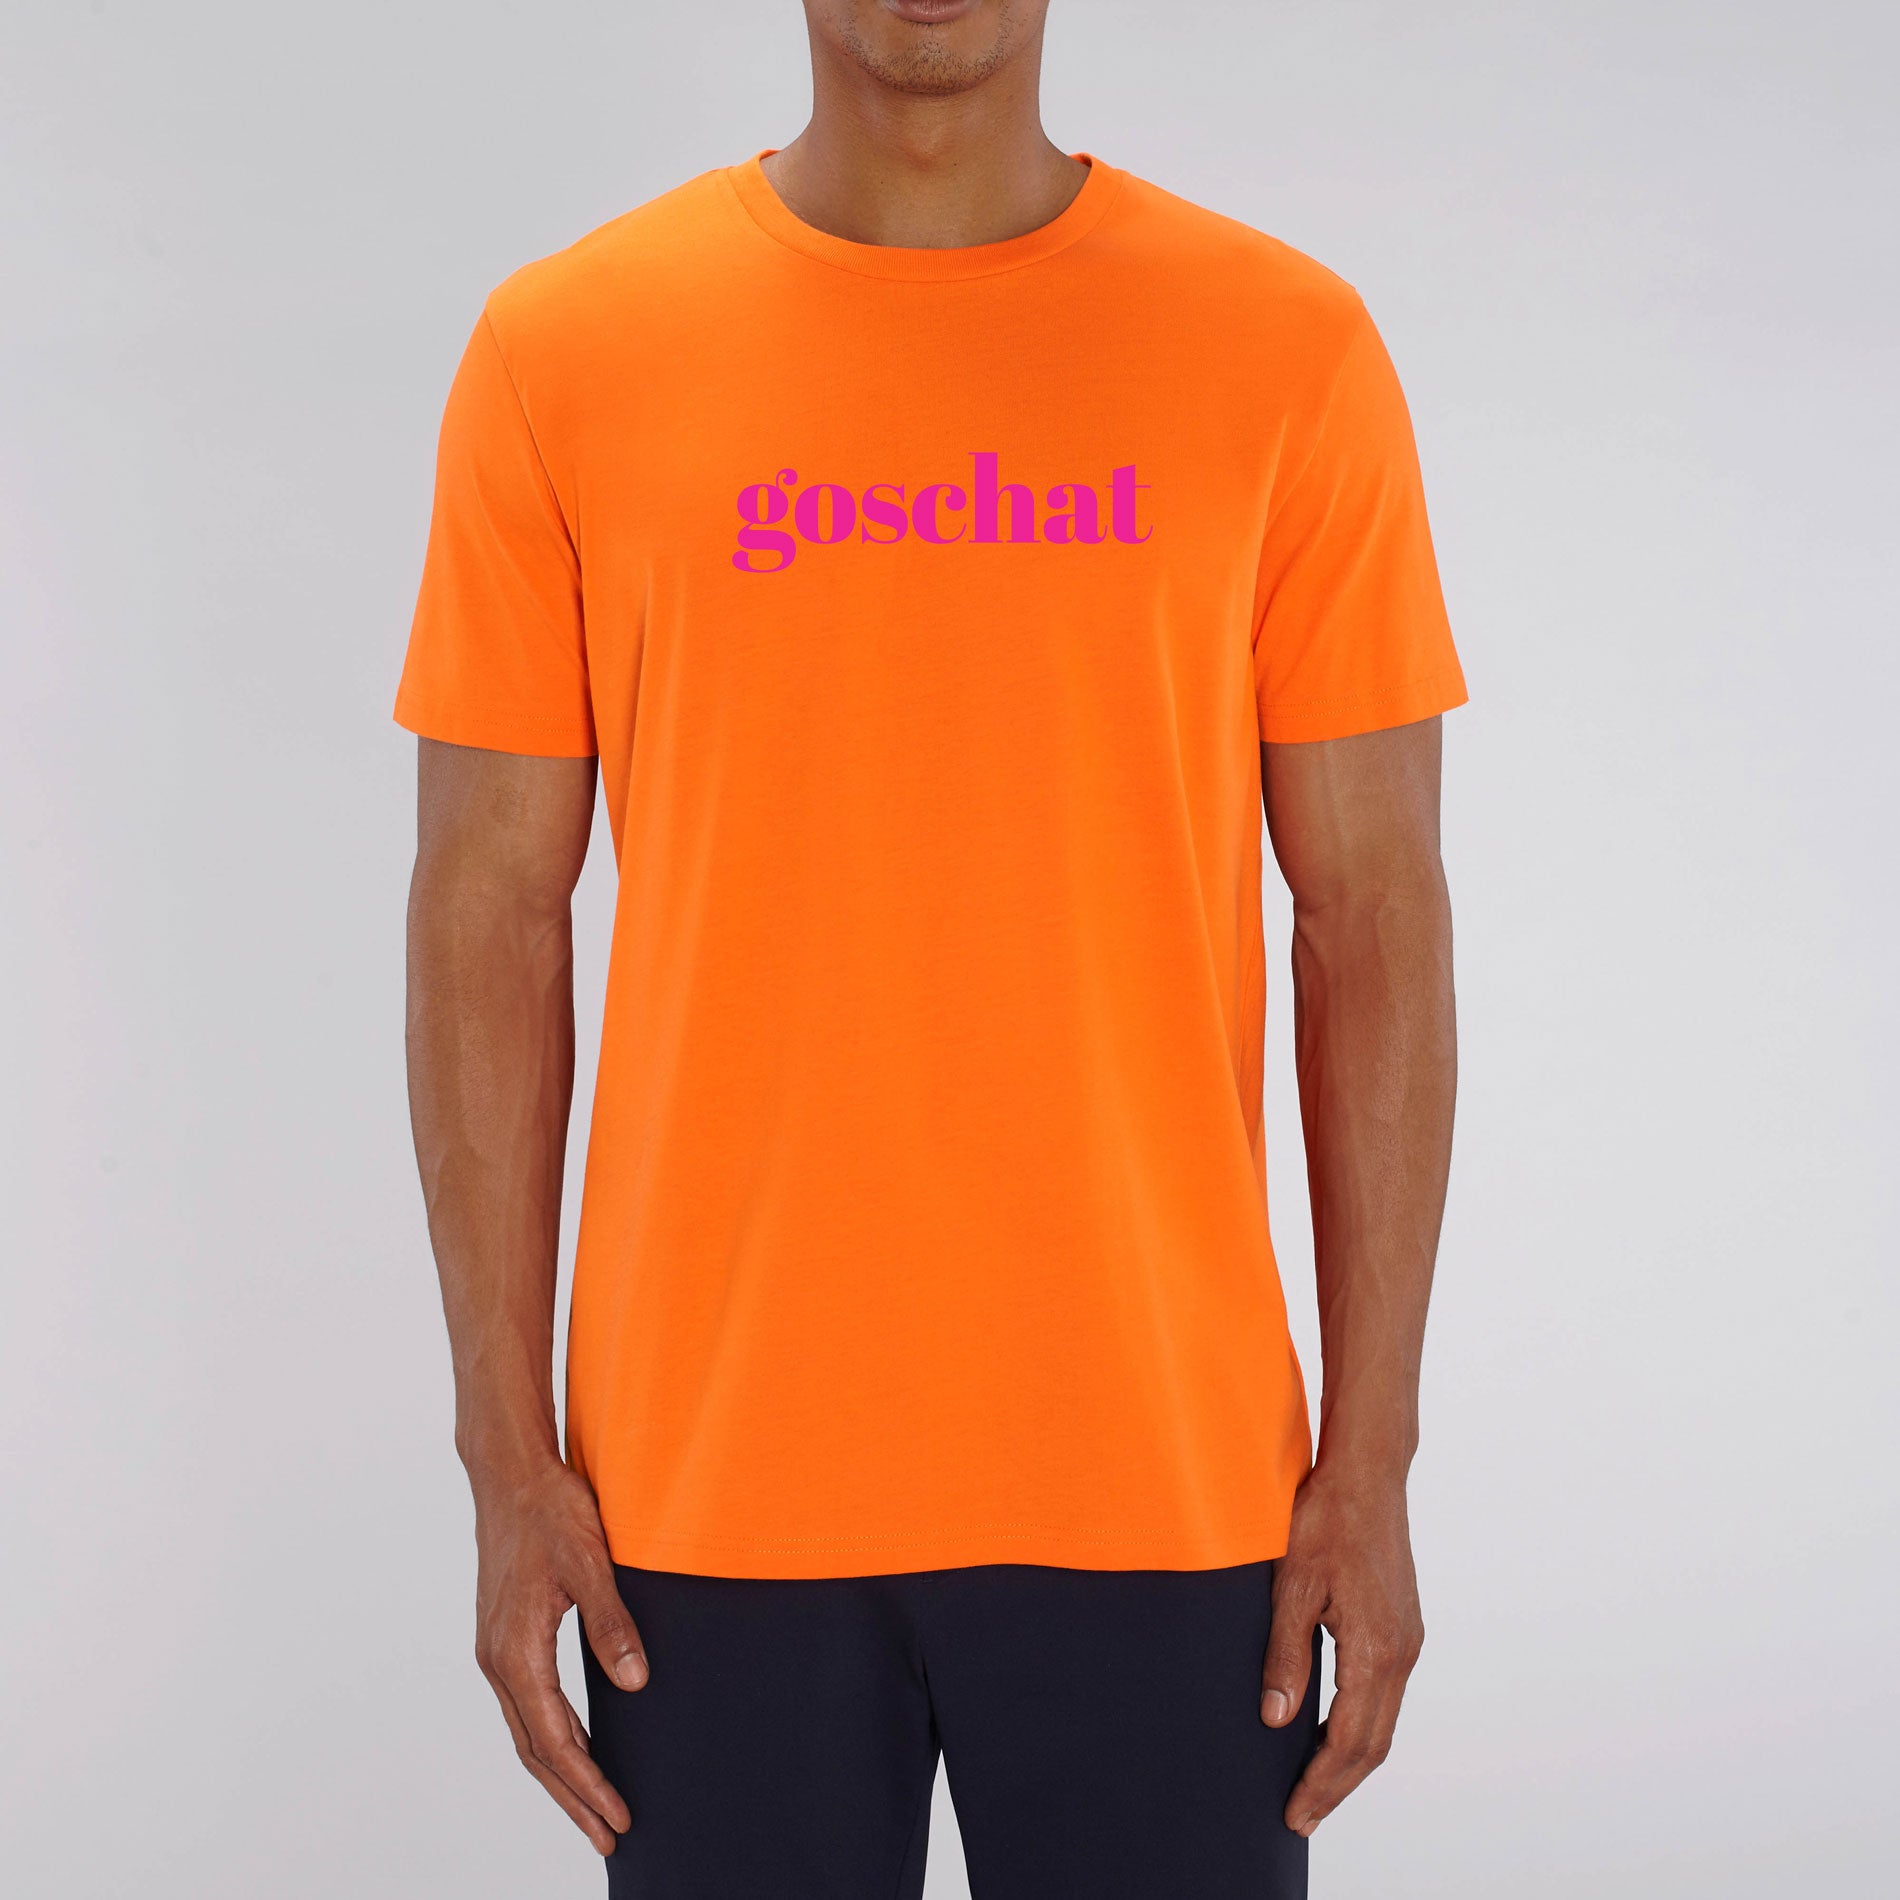 BUSSI DELUXE T-Shirt GOSCHAT - knallorange & neonpink